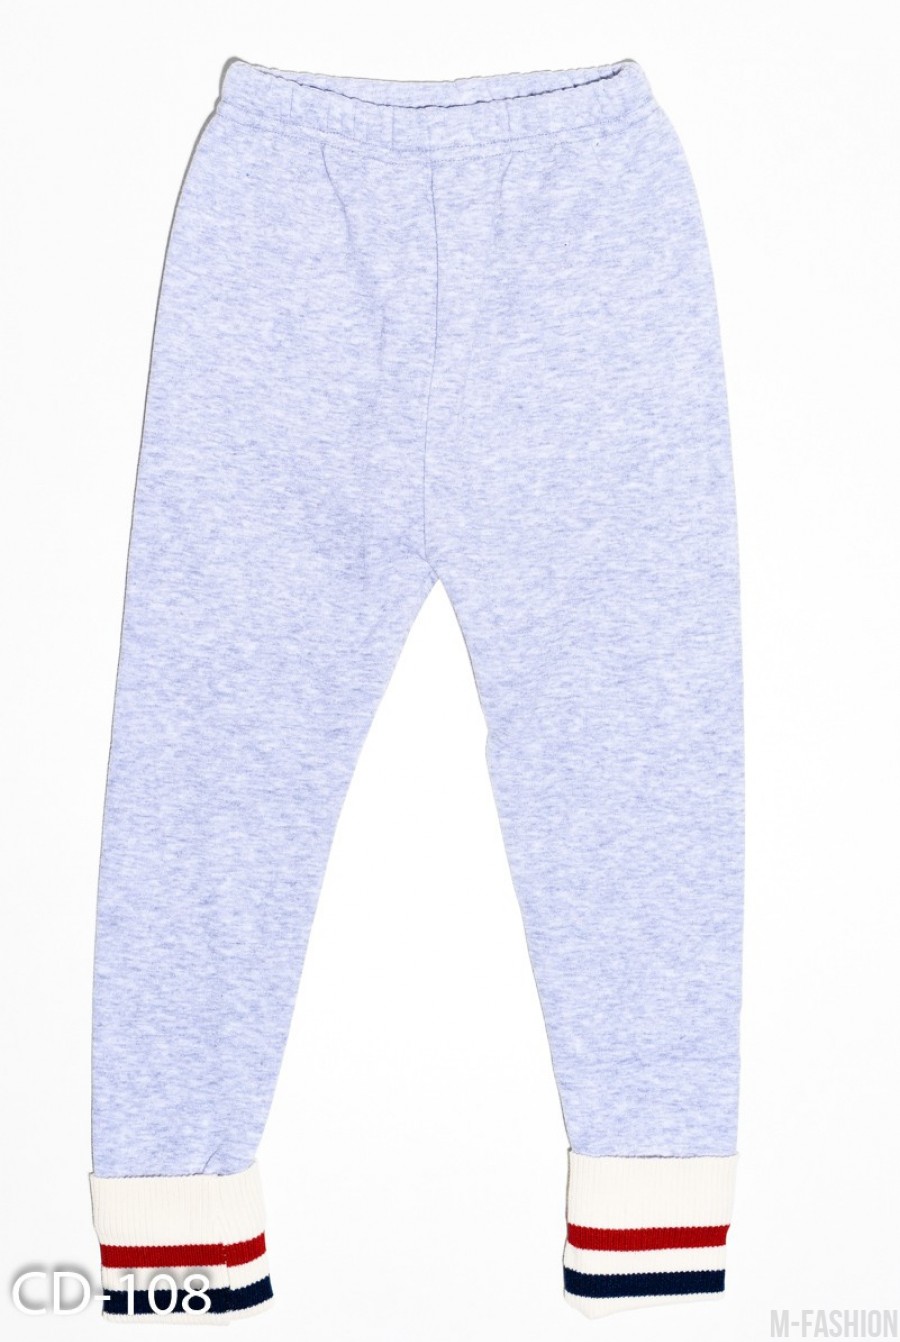 Теплые серые спортивные штаны из трикотажа на меху с широкими полосатыми манжетами- Фото 2